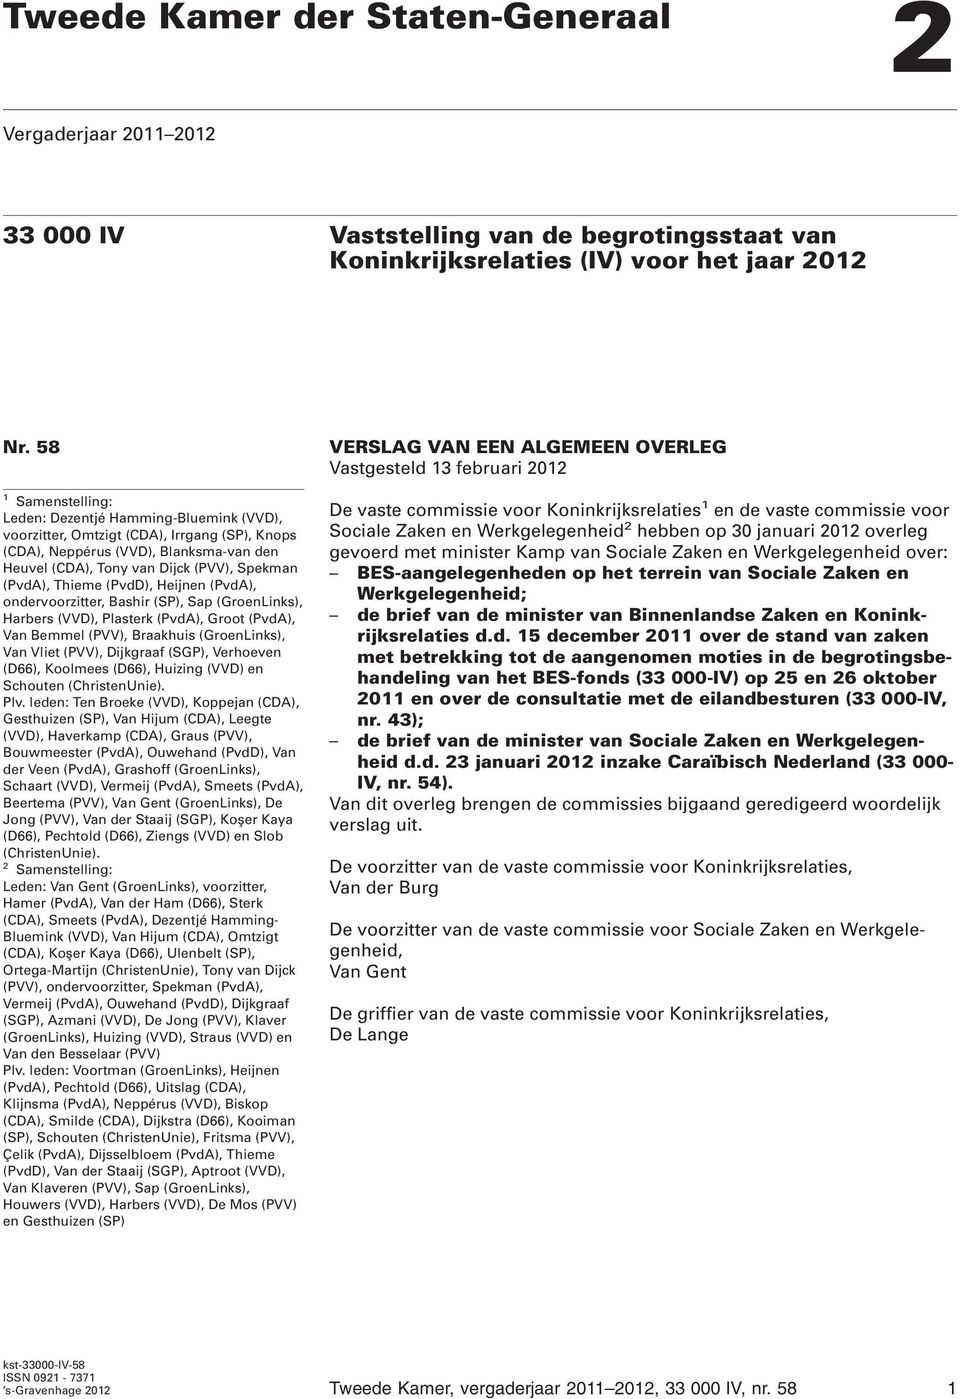 Thieme (PvdD), Heijnen (PvdA), ondervoorzitter, Bashir (SP), Sap (GroenLinks), Harbers (VVD), Plasterk (PvdA), Groot (PvdA), Van Bemmel (PVV), Braakhuis (GroenLinks), Van Vliet (PVV), Dijkgraaf